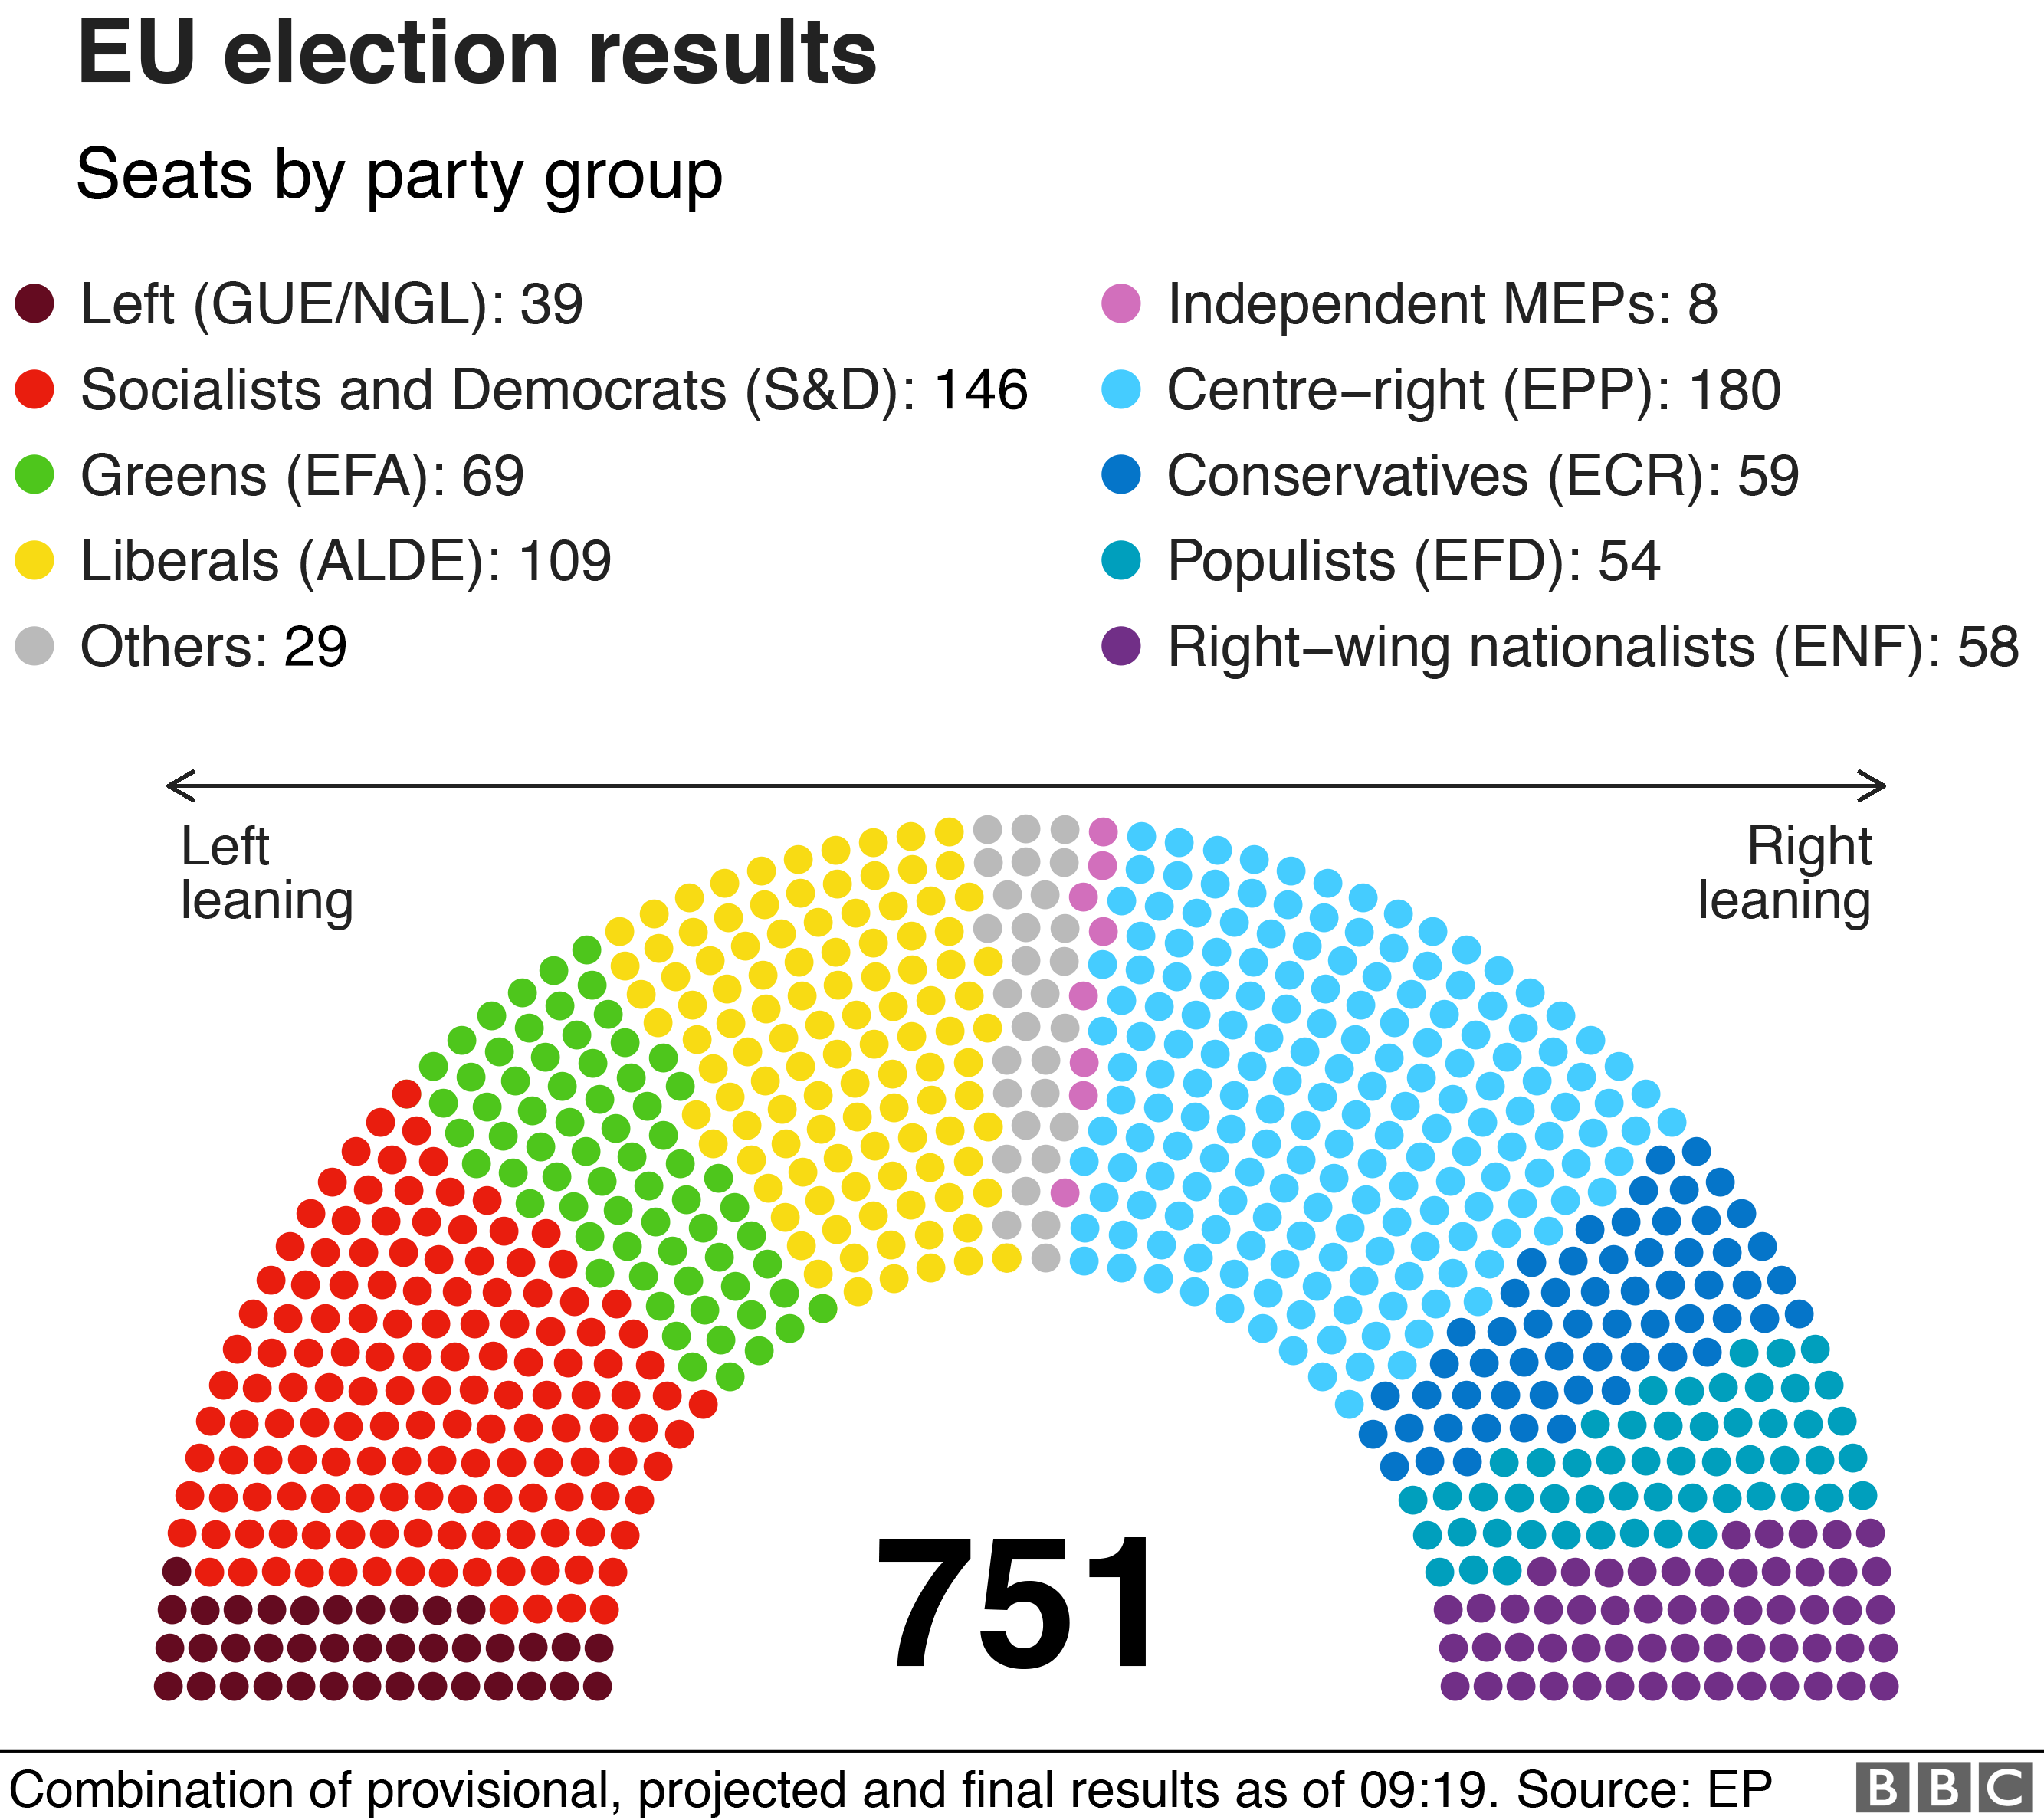 Результаты по партийной группе. Самый большой EPP - 180 из 751